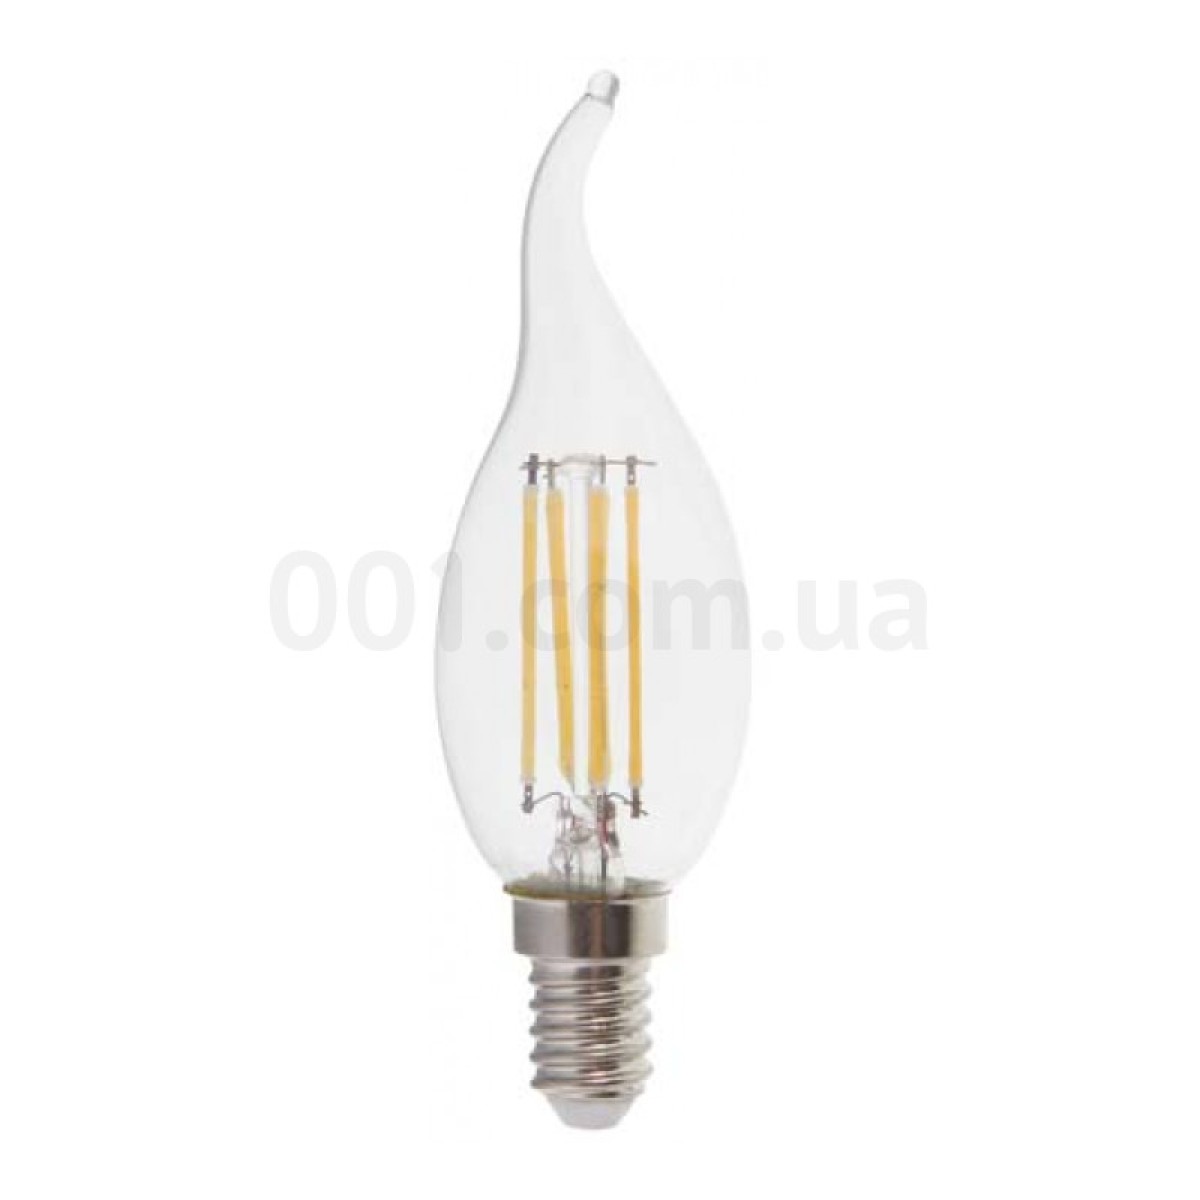 Світлодіодна лампа LB-59 CF37 (свічка на вітрі) філамент 4Вт 2700K E14, Feron 98_98.jpg